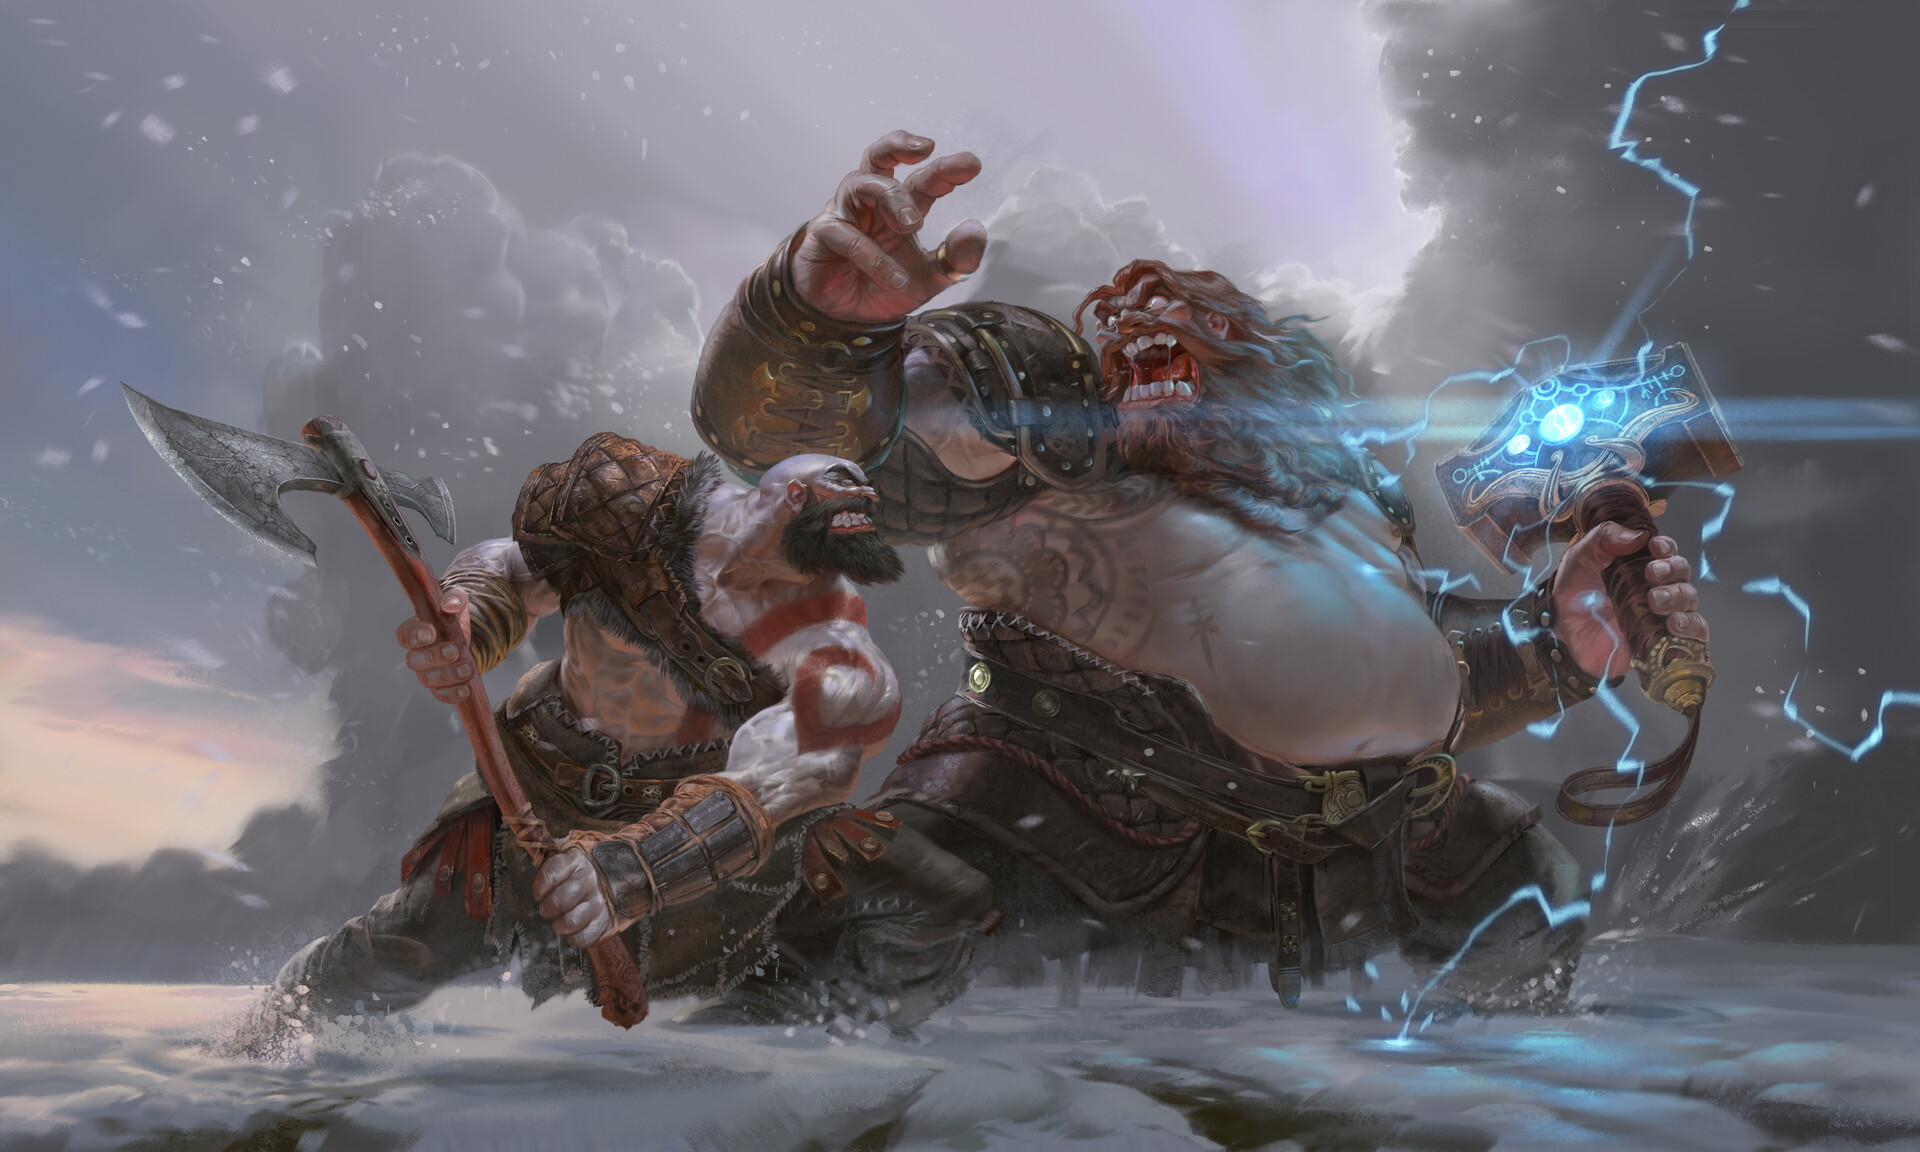 ArtStation - God of War Ragnarök - Thor